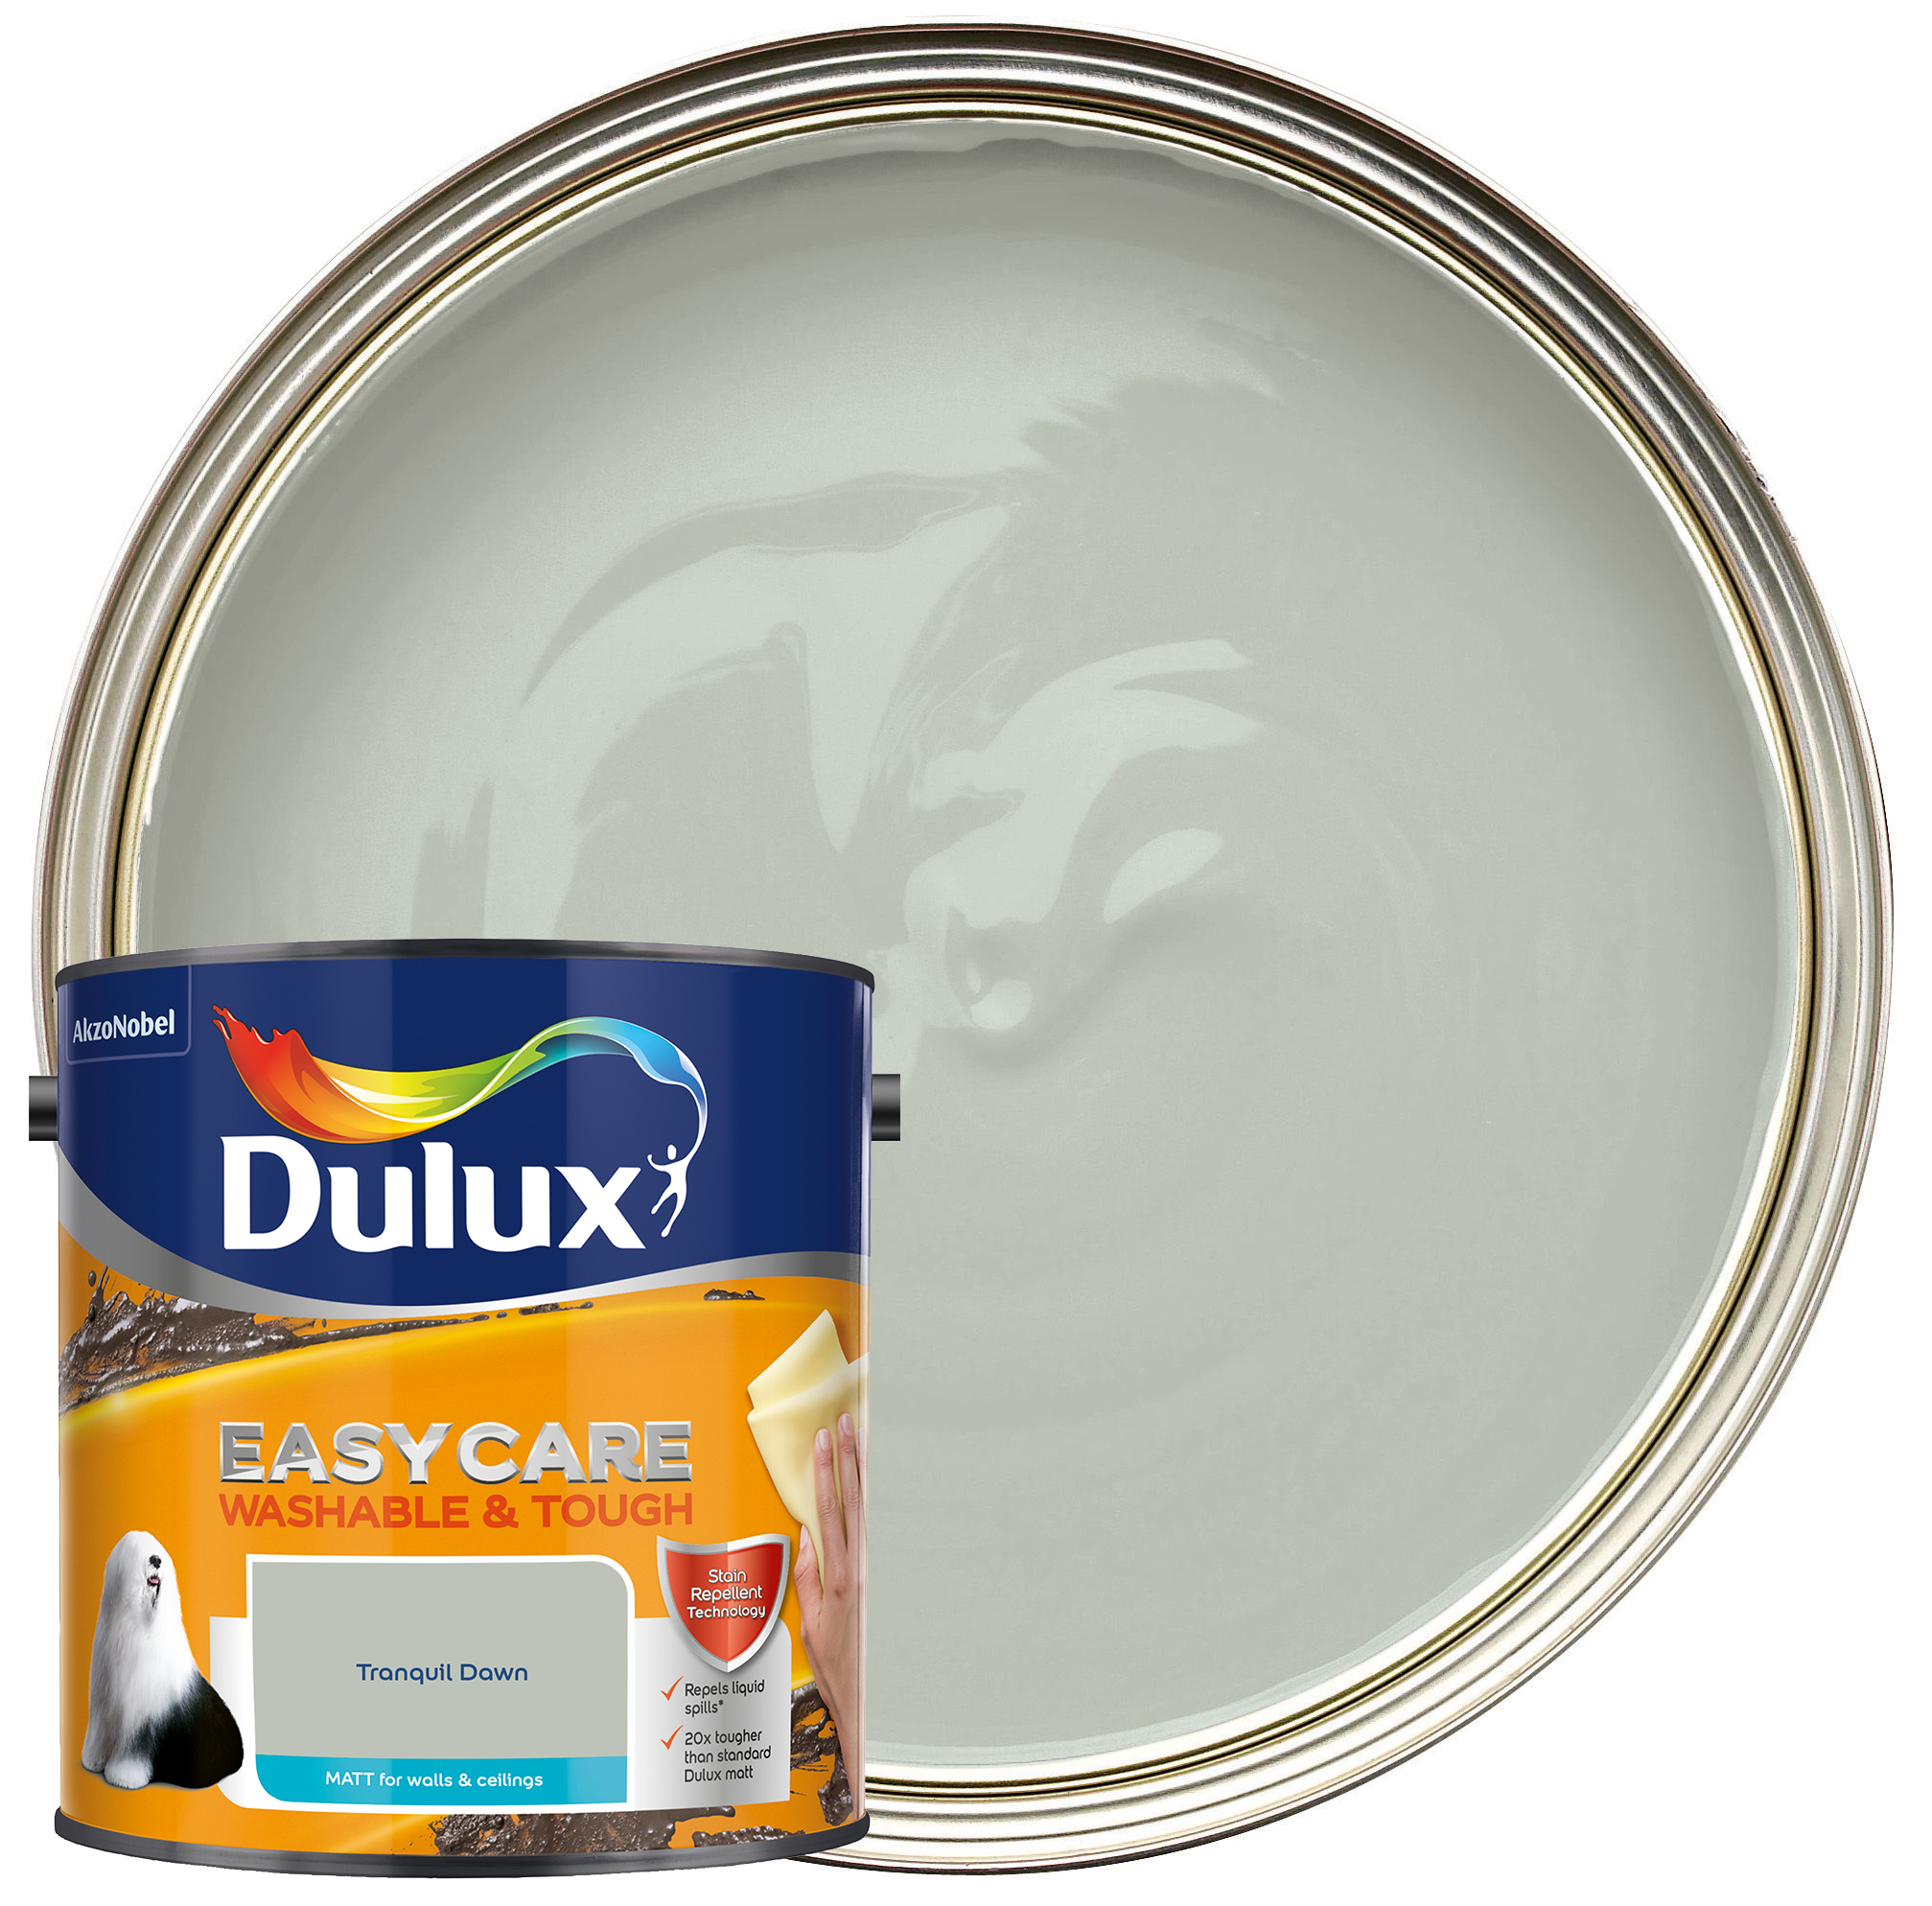 Dulux Easycare Washable & Tough Matt Emulsion Paint - Tranquil Dawn - 2.5L